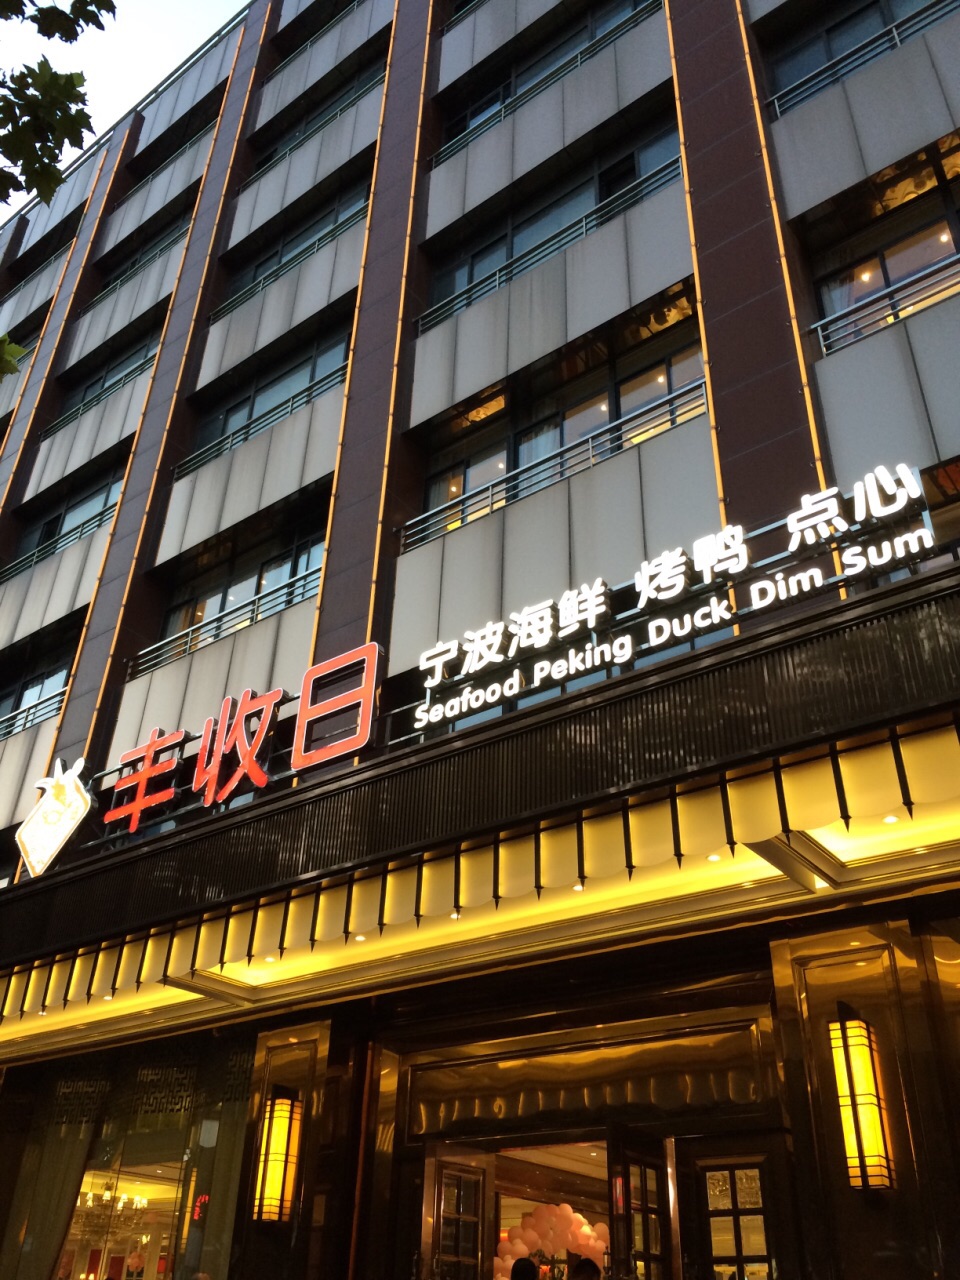 上海丰收日大酒店图片